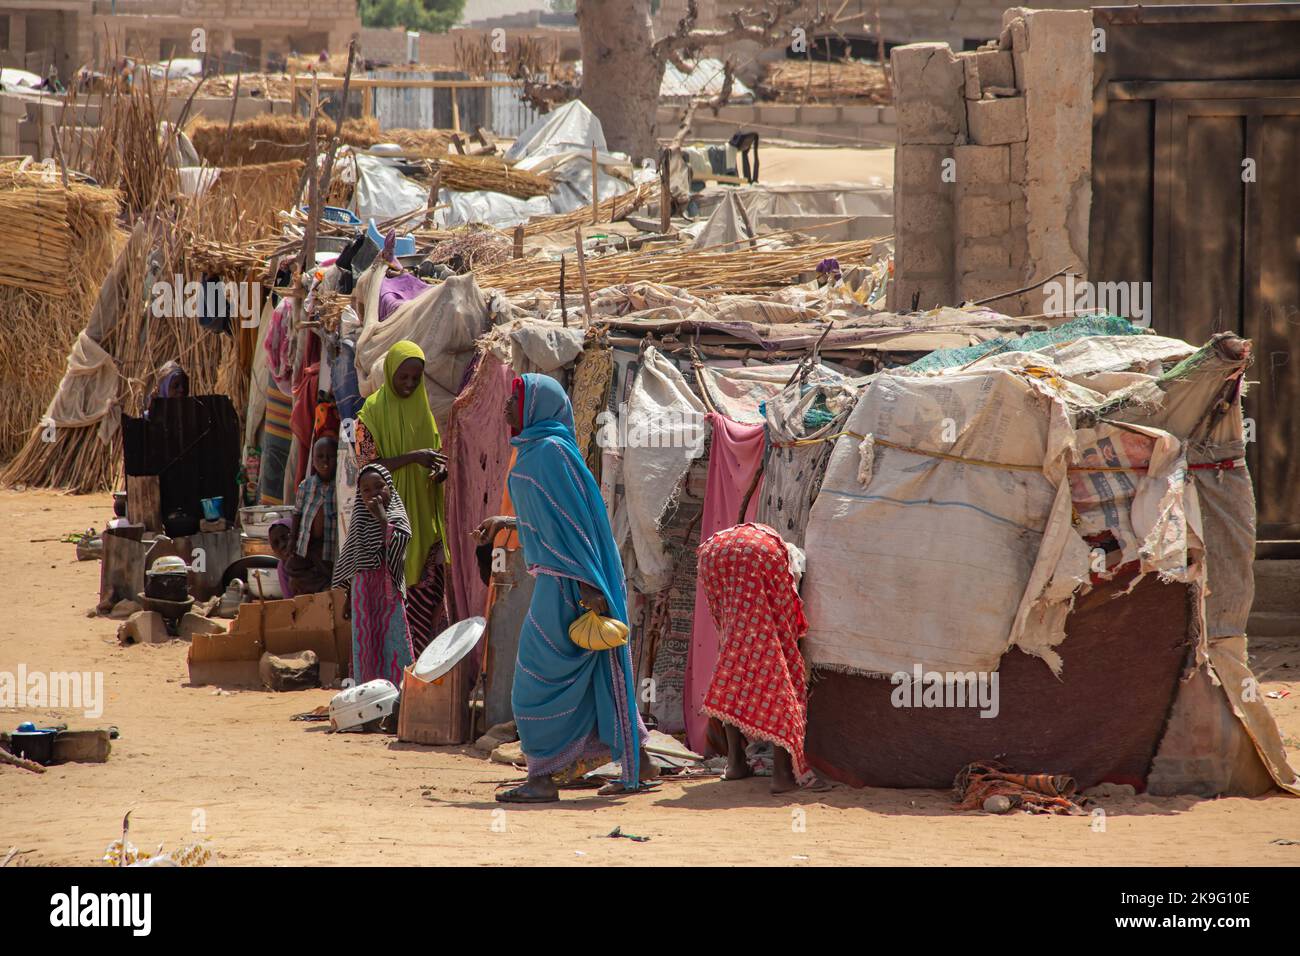 Campamento de refugiados (IDP - Desplazados Internos) que se refugia del conflicto armado entre grupos de oposición y gobierno. Foto de stock